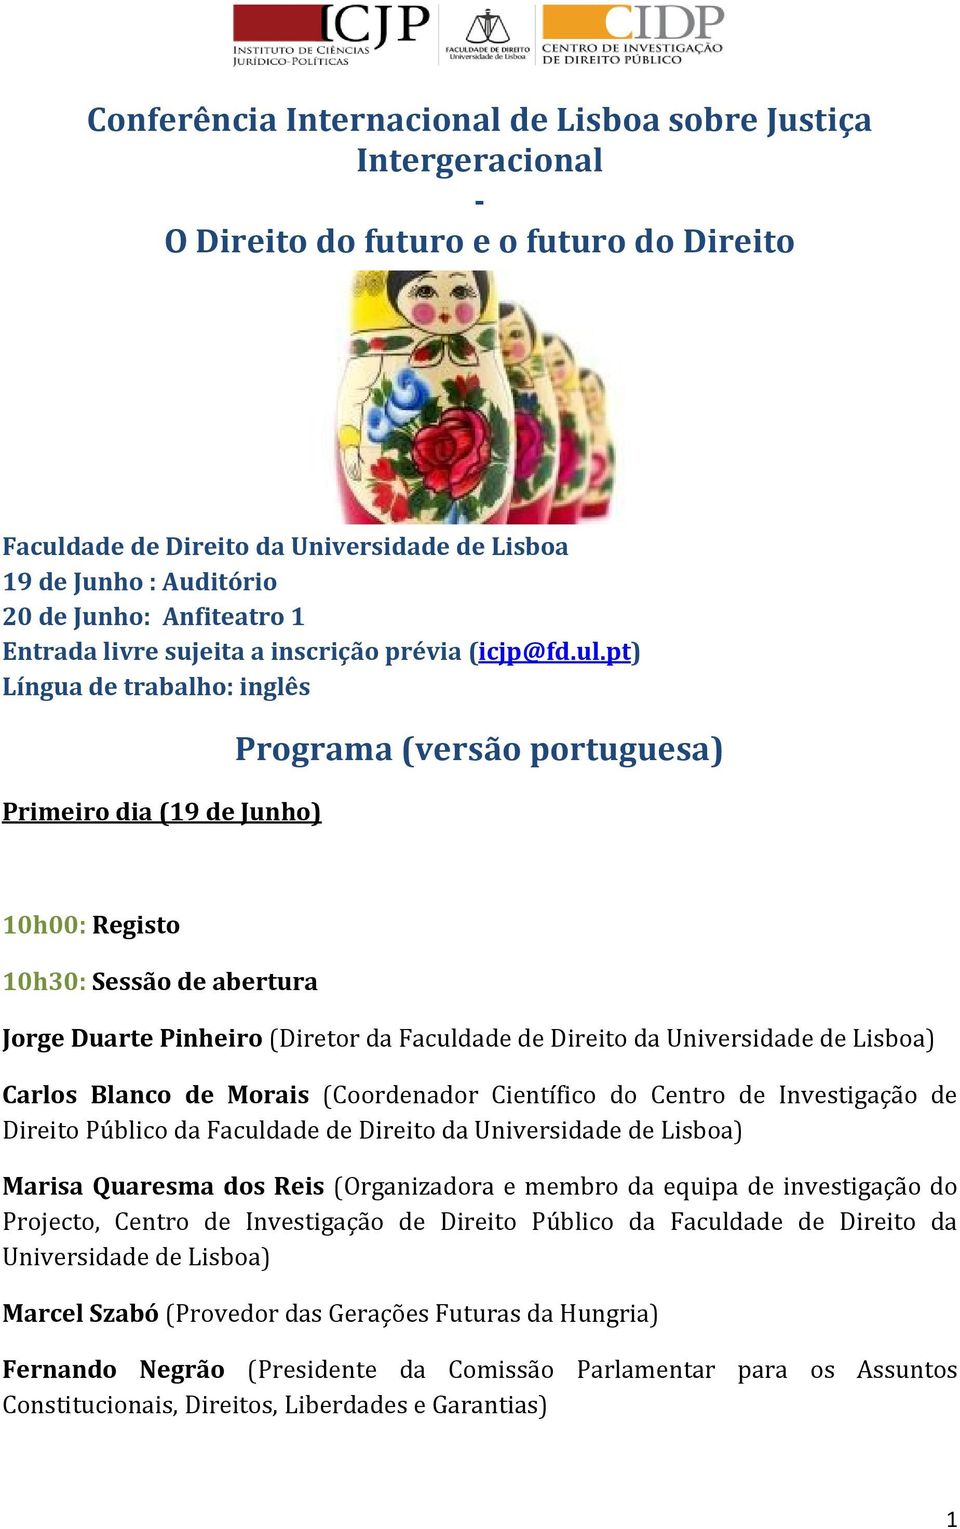 pt) Língua de trabalho: inglês Primeiro dia (19 de Junho) Programa (versão portuguesa) 10h00: Registo 10h30: Sessão de abertura Jorge Duarte Pinheiro (Diretor da Faculdade de Direito da Universidade